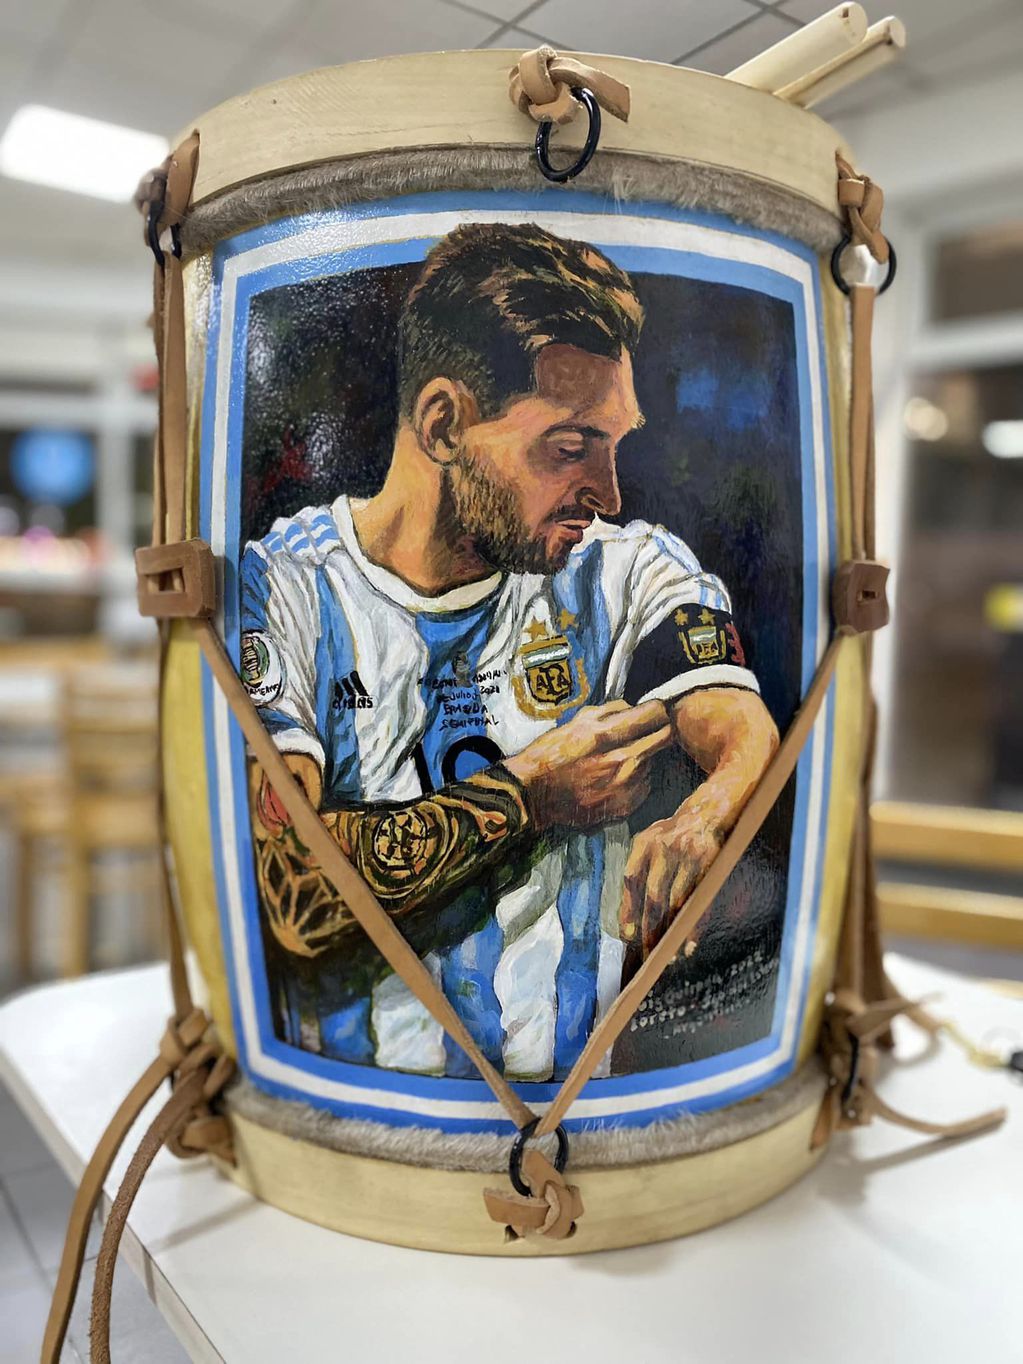 El increíble bombo con la imagen de Lionel Messi.